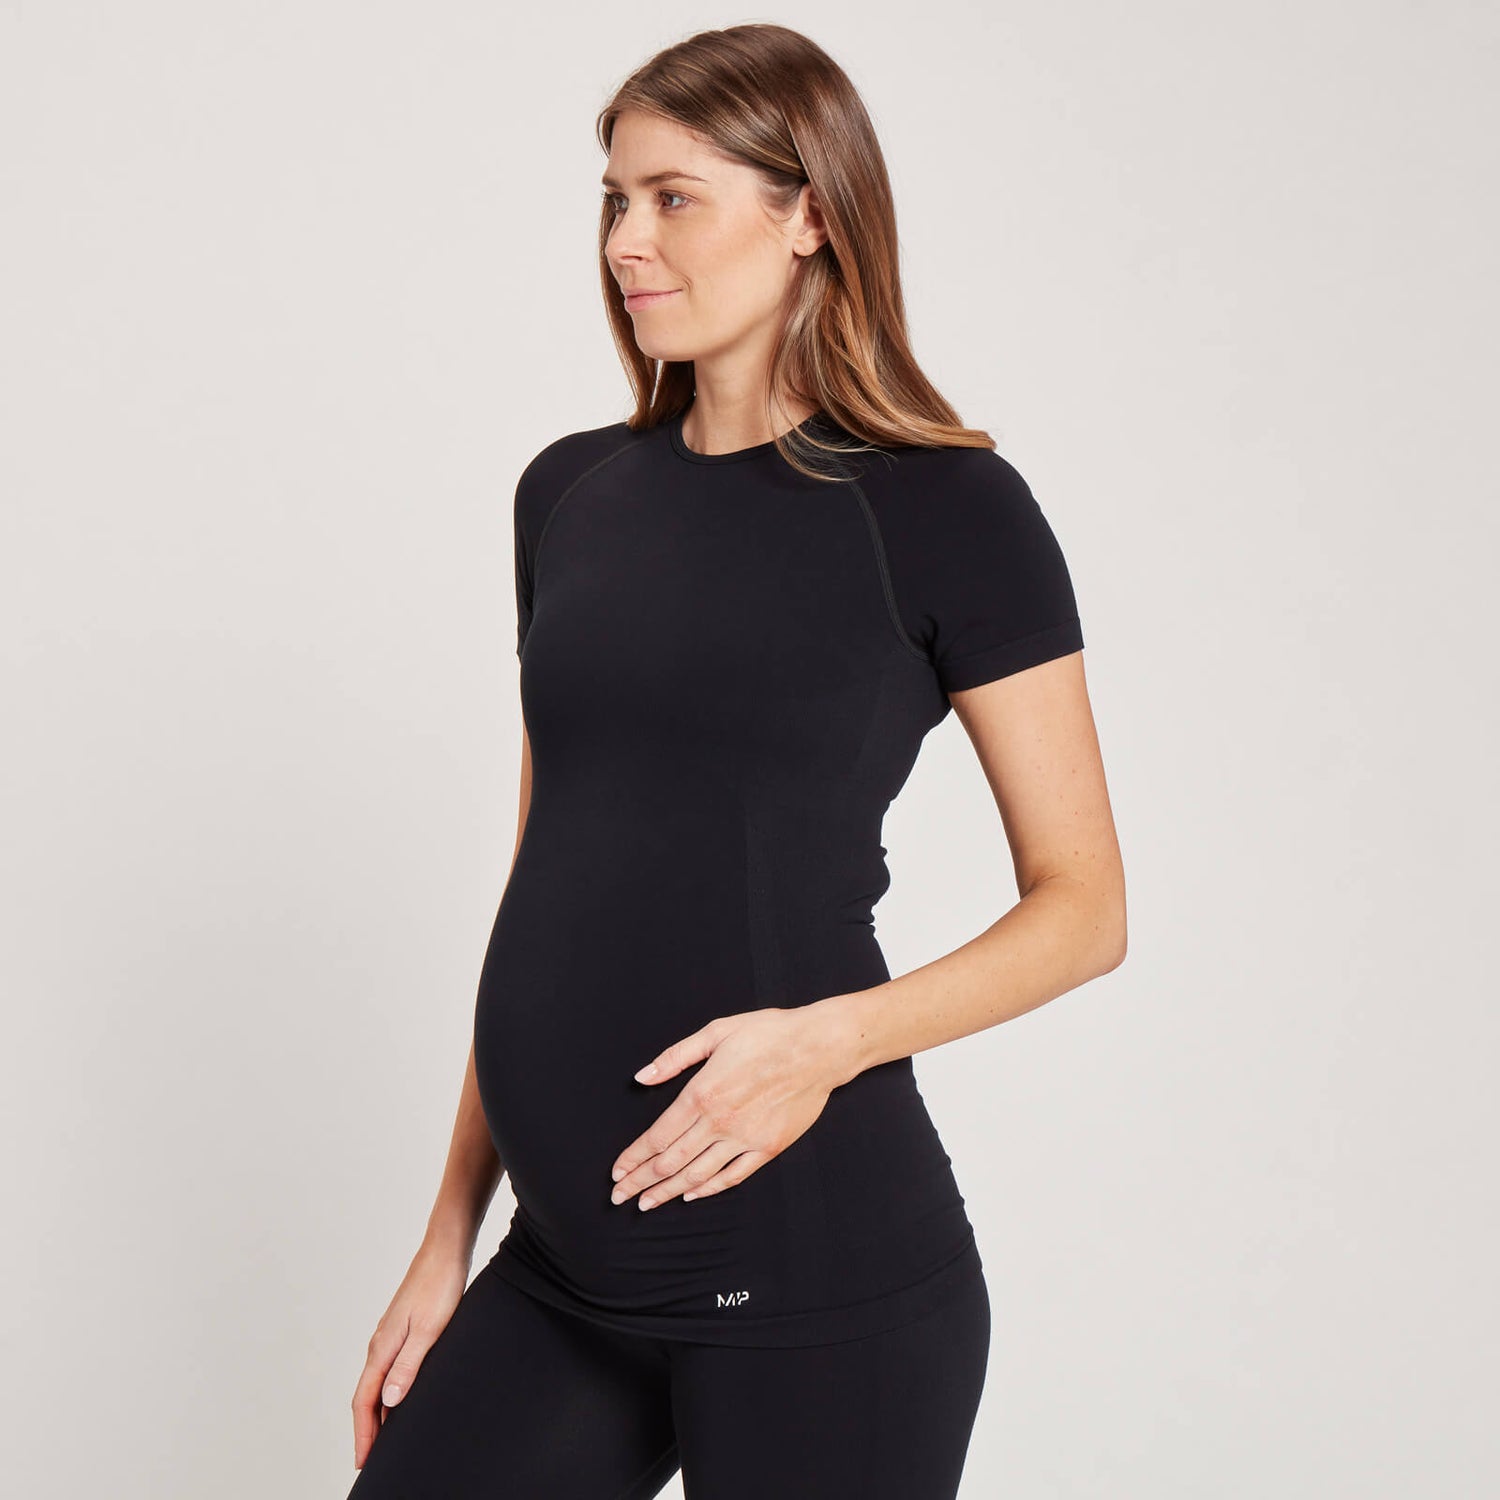 Dámske bezšvové tehotenské tričko MP s krátkymi rukávmi – čierne - XXS